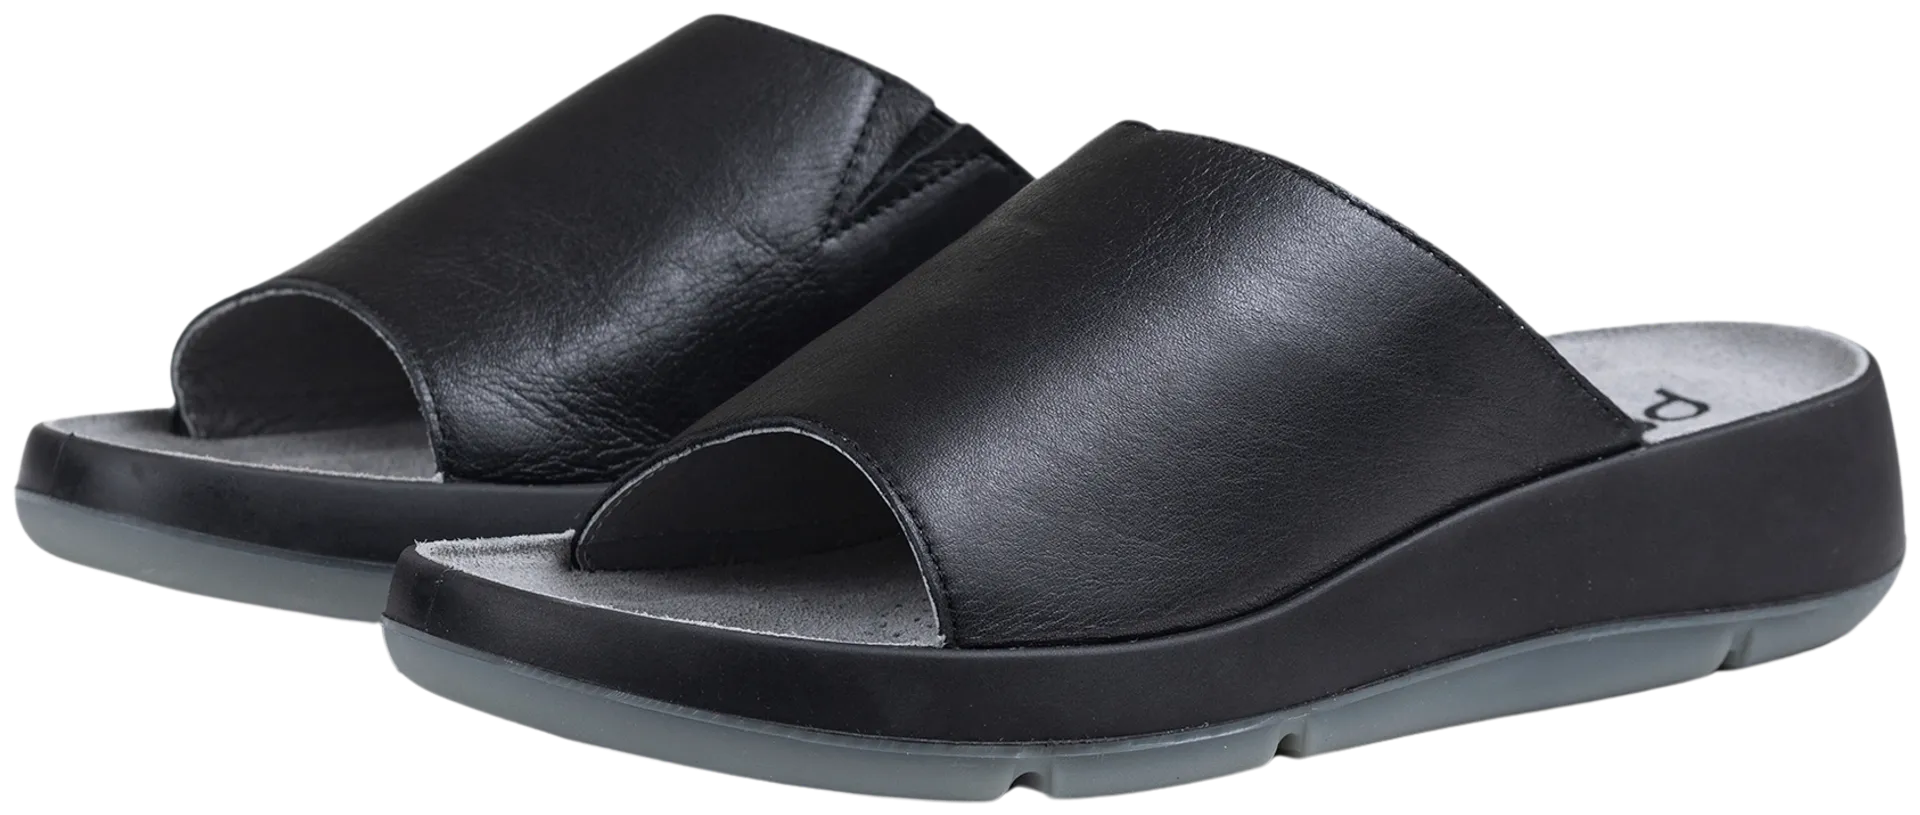 Pomar naisten sandaali Aavikko - BLACK - 2